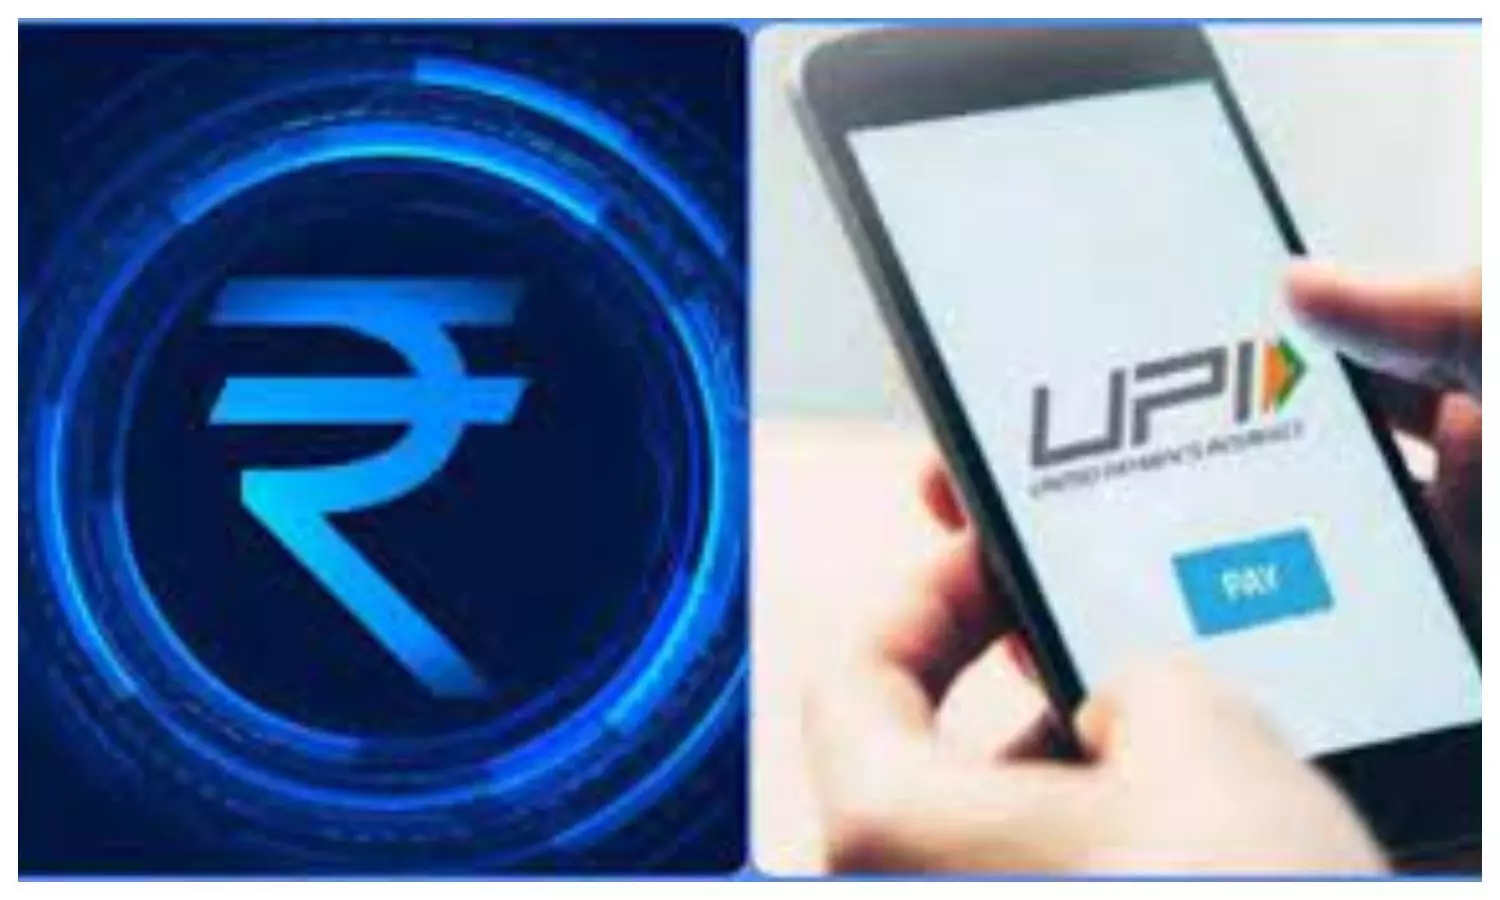 Digital Rupee vs UPI